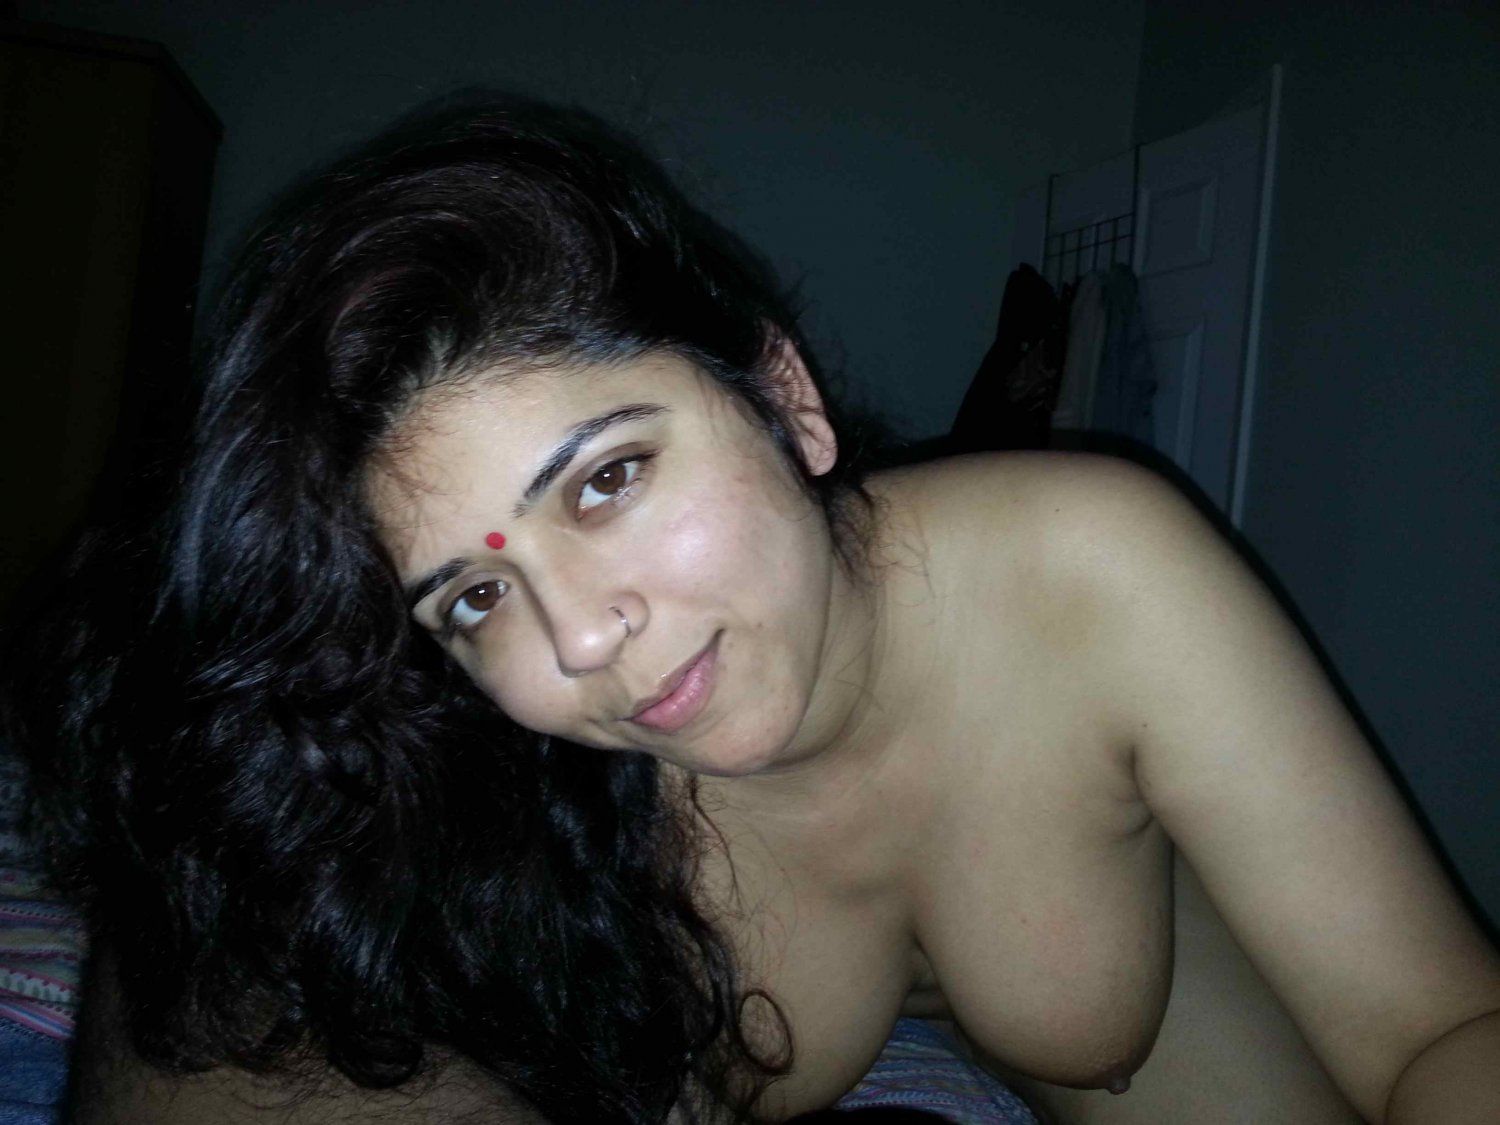 Hot indian wife - Porn Videos & Photos - EroMe